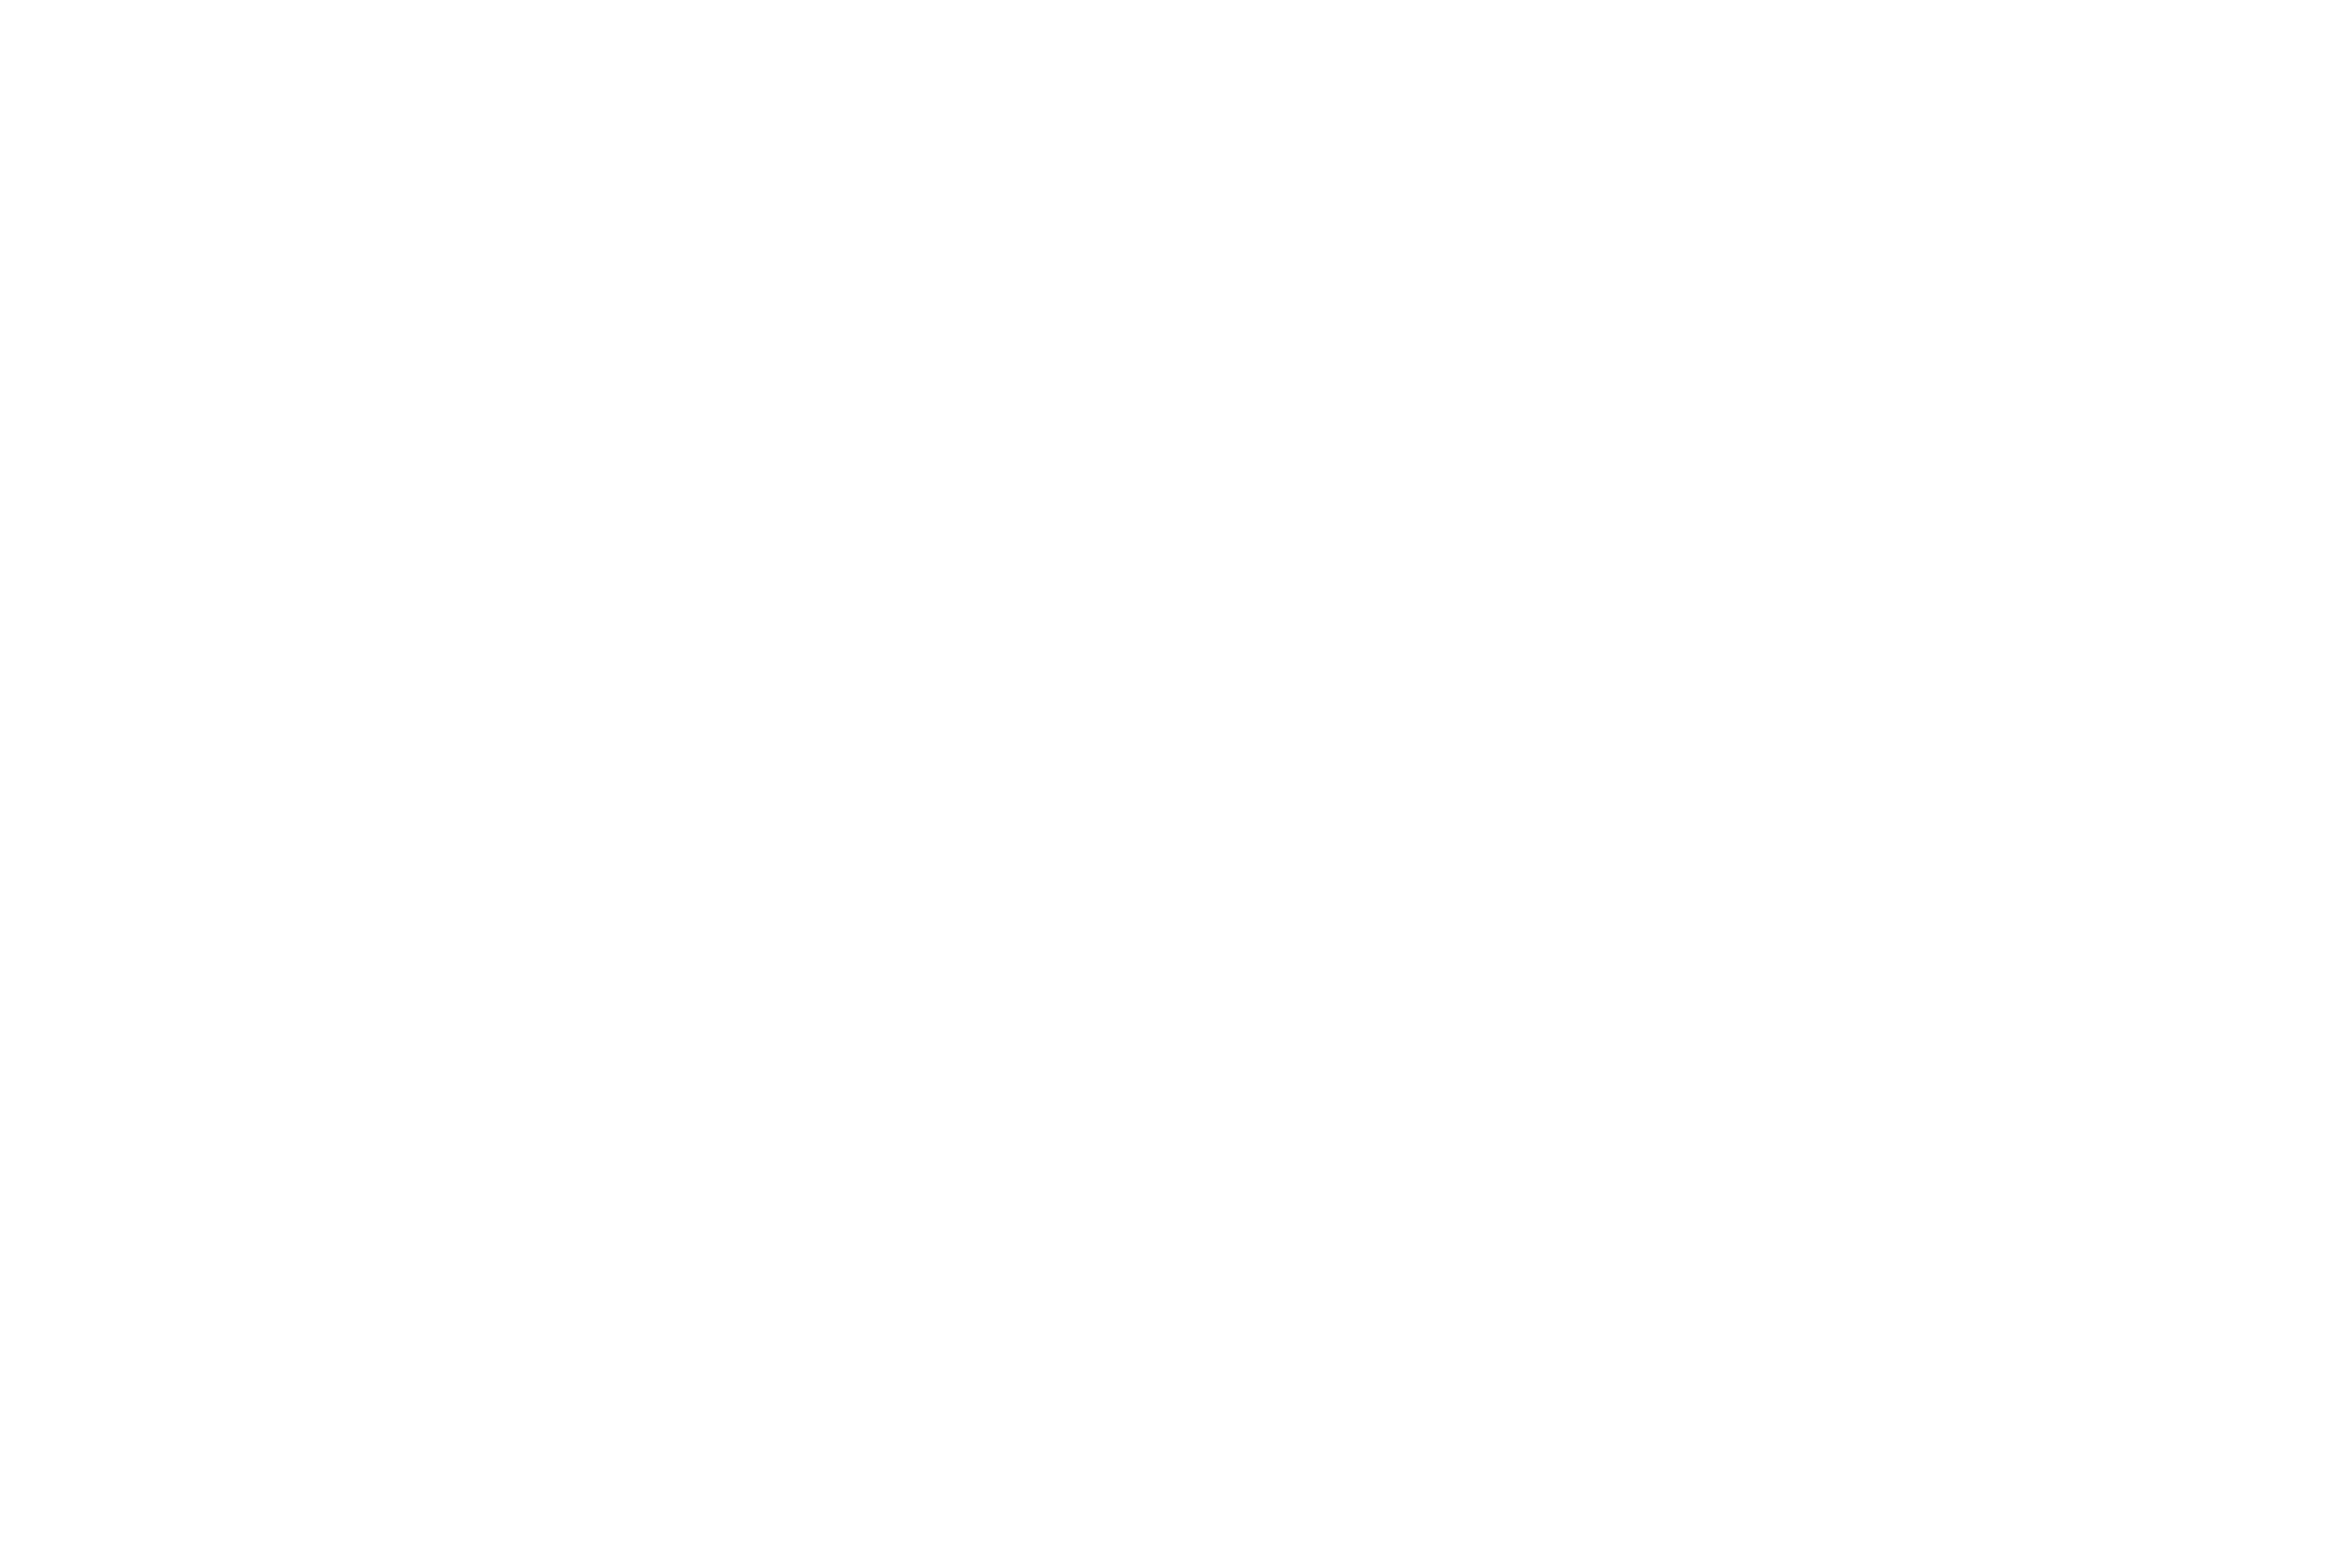 Sahil Shah